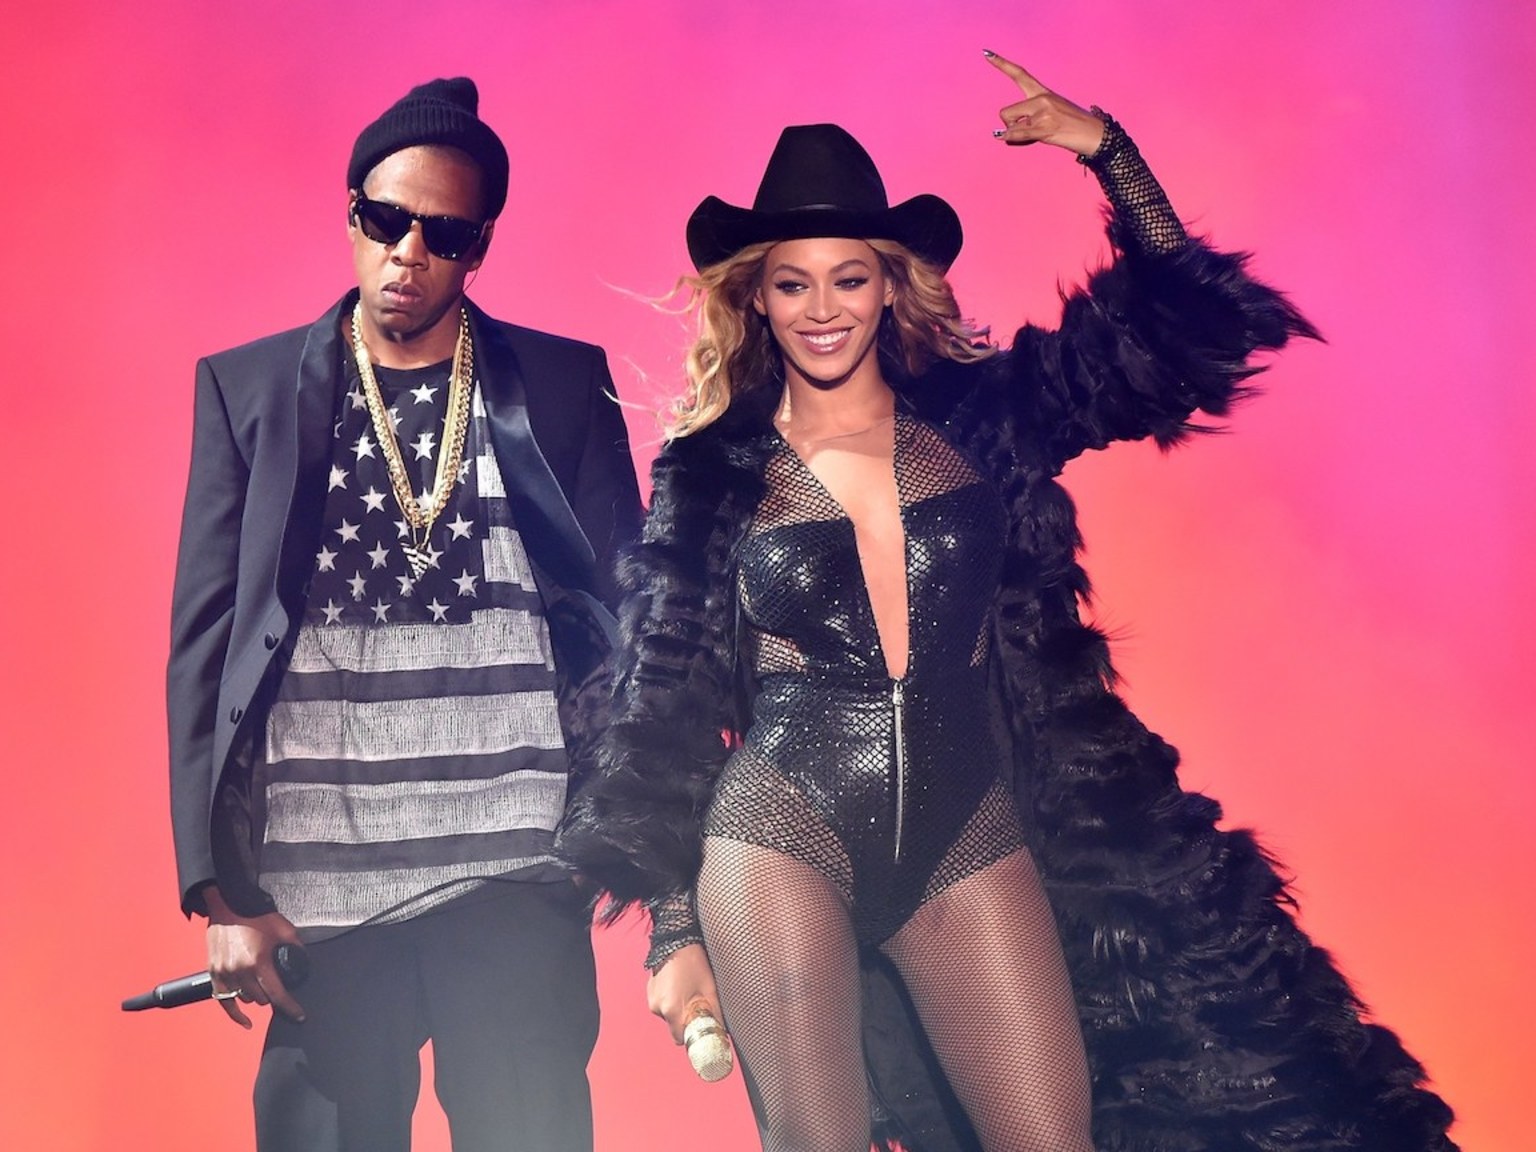 лучшей песней, стала композиция Crazy in Love американской певицы Beyonce и рэпера Jay-Z. - фото 1